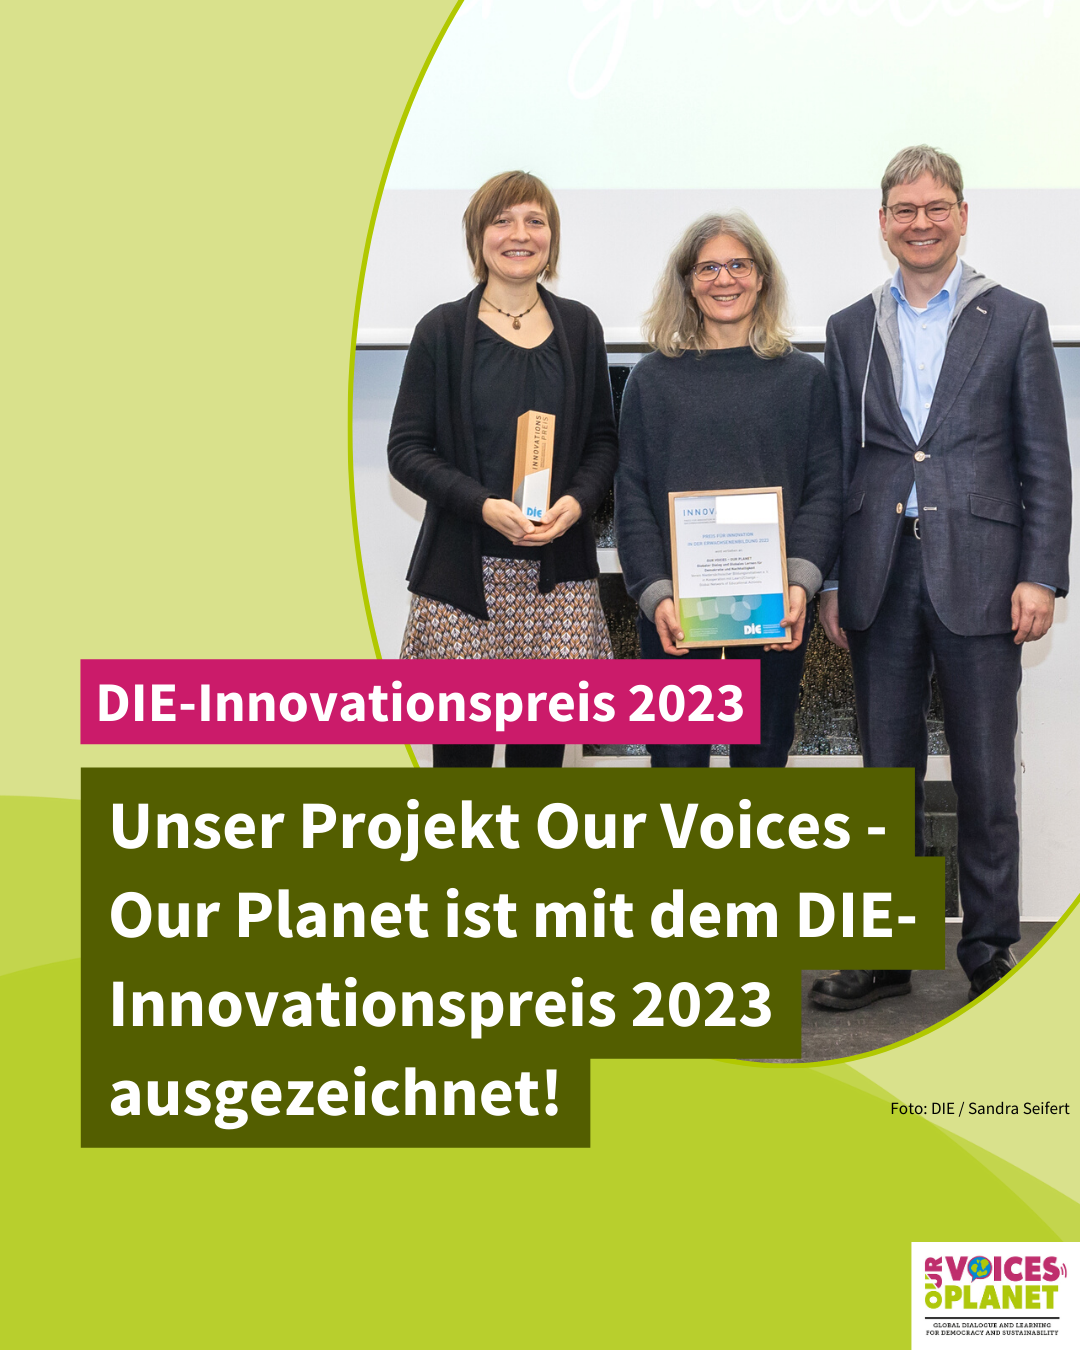 Unser Projekt Our Voices – Our Planet ist mit dem DIE- Innovationspreis 2023 ausgezeichnet!